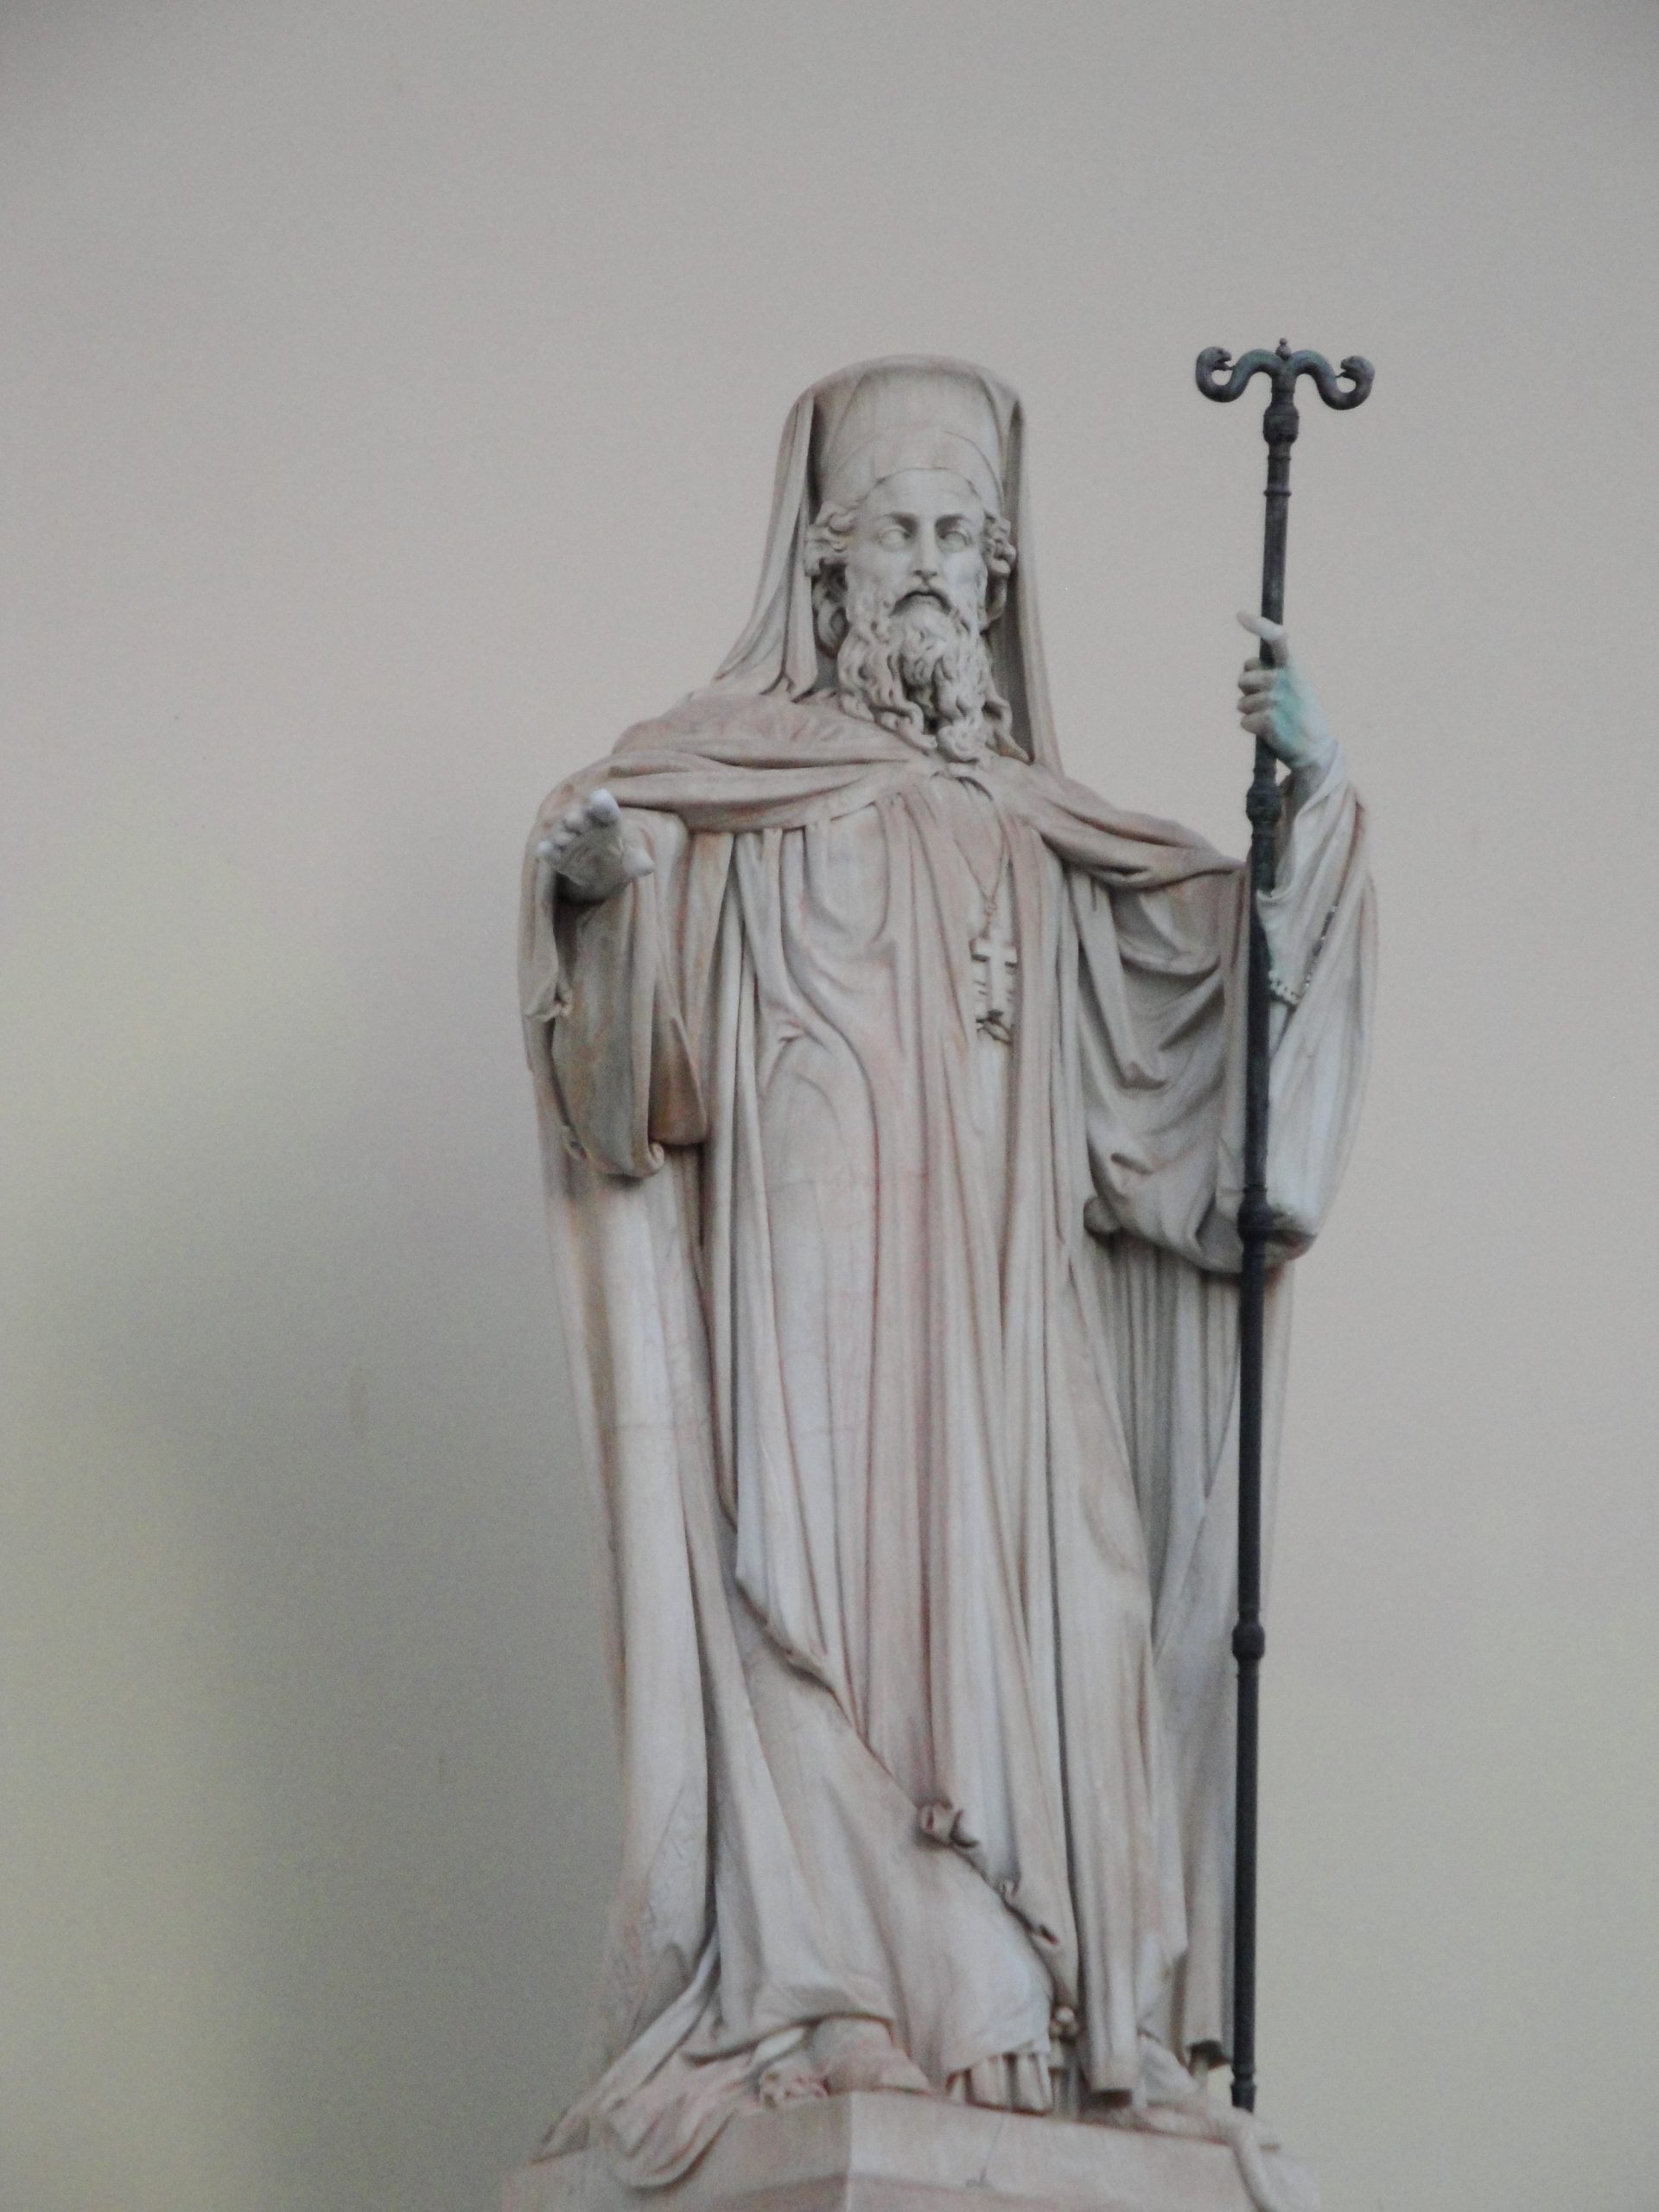 Έκοψαν και έκλεψαν το χέρι στο άγαλμα του Γρηγόριου του Ε’ στο κέντρο της Αθήνας